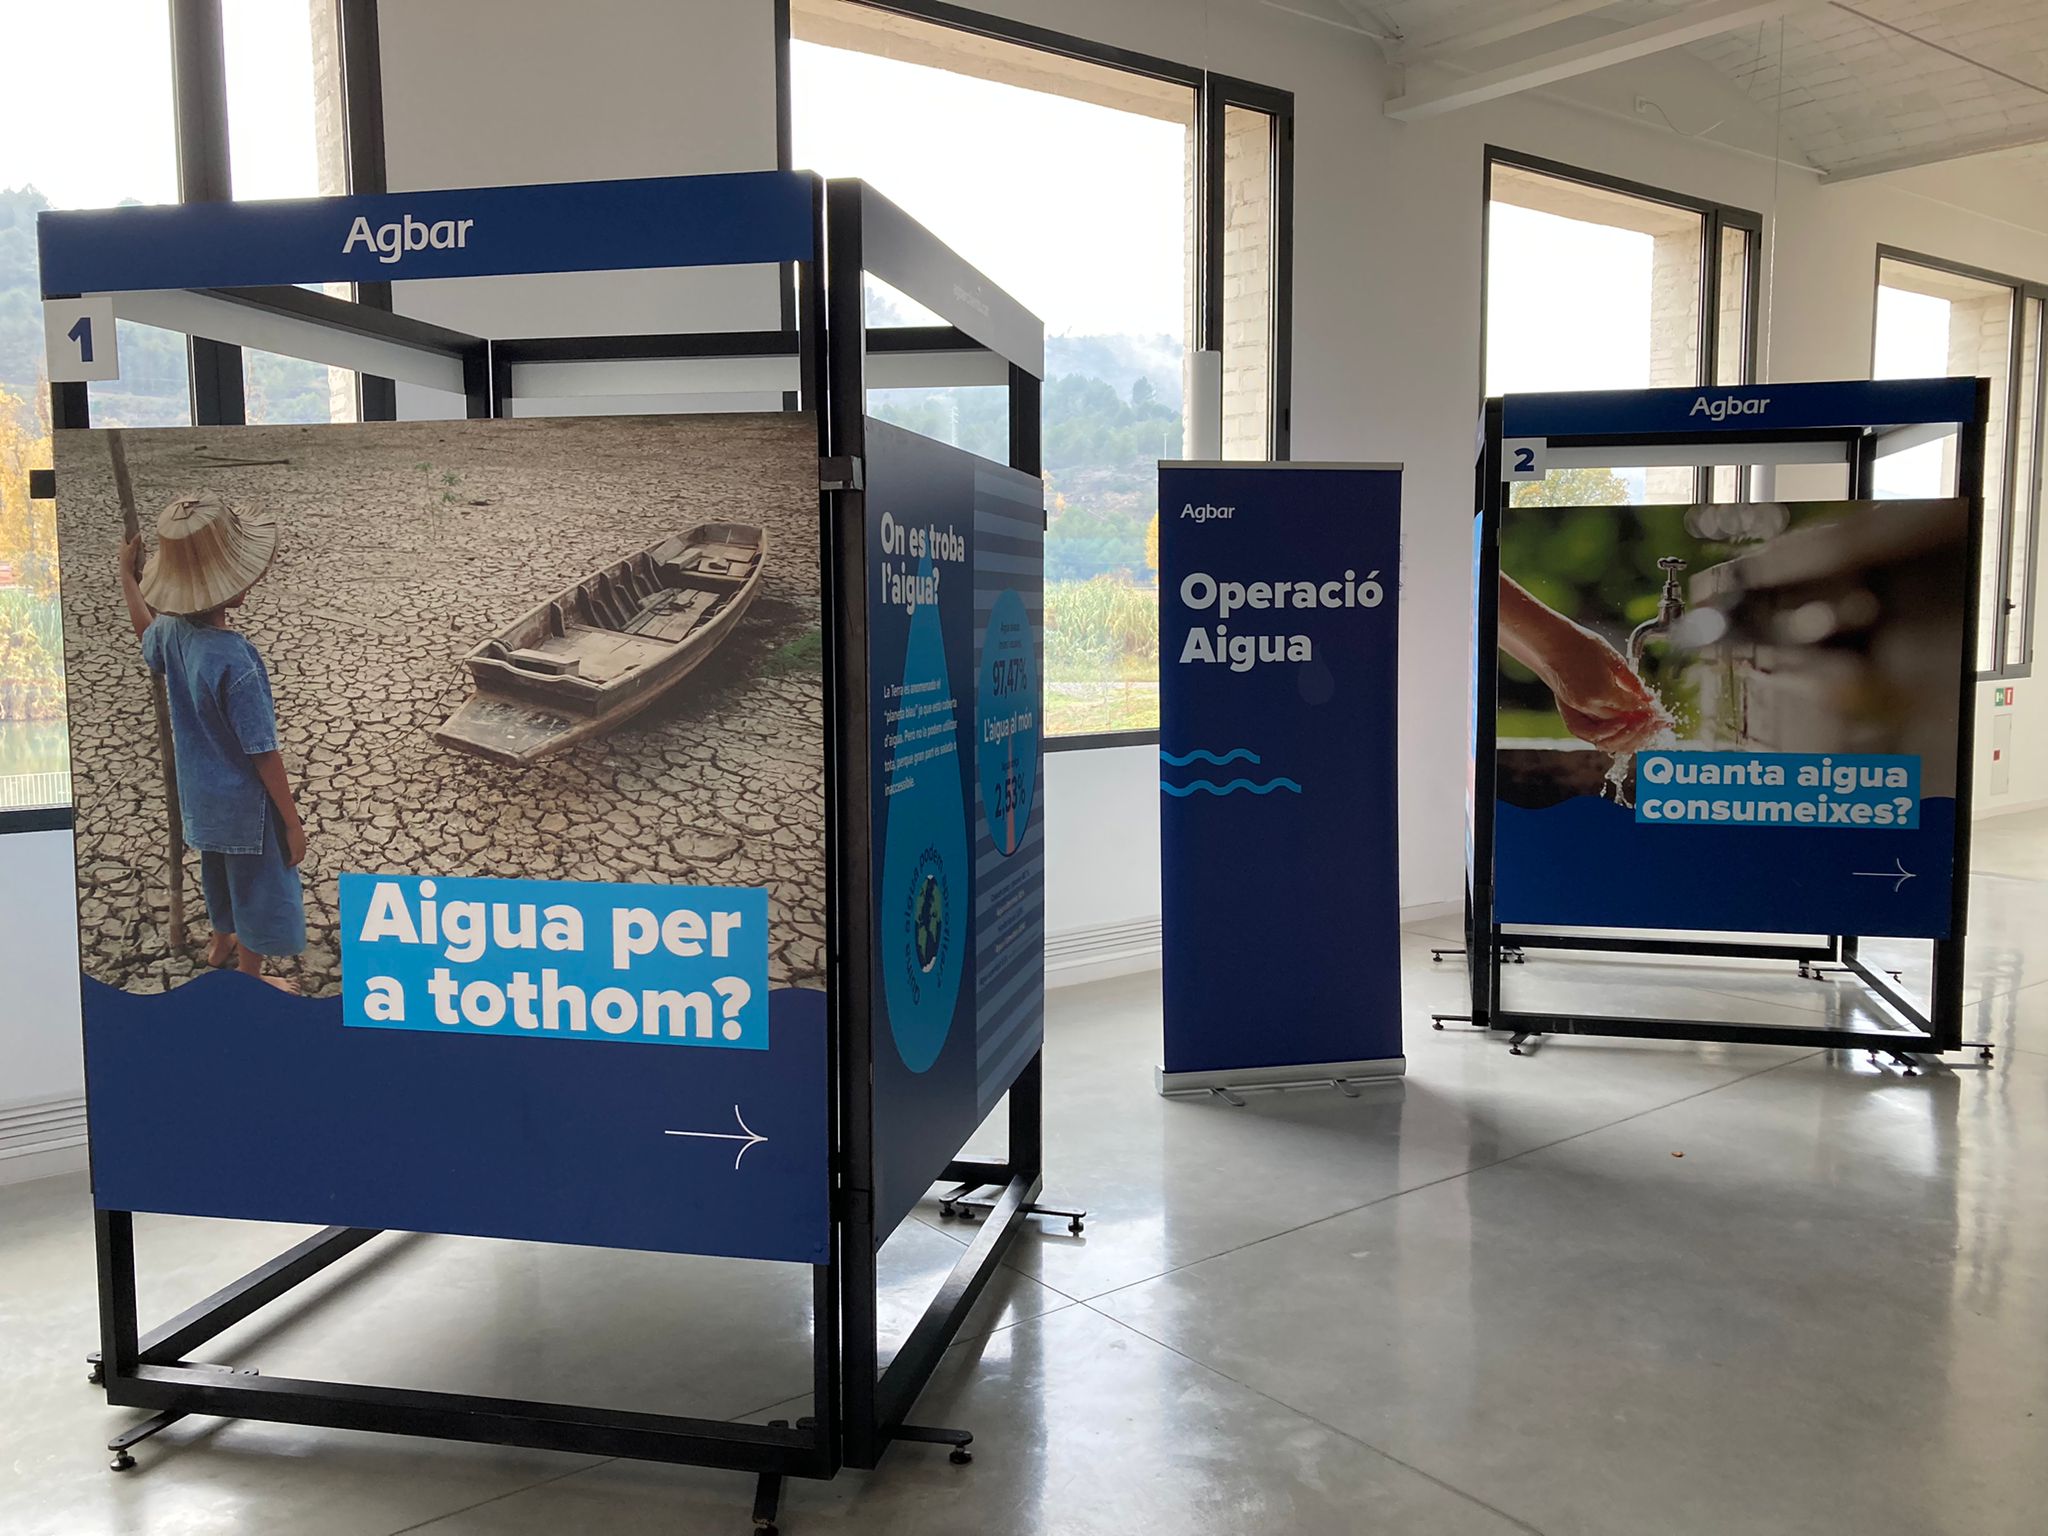 Fàbrica Vella acull l'exposició "Operació Aigua" d'Agbar